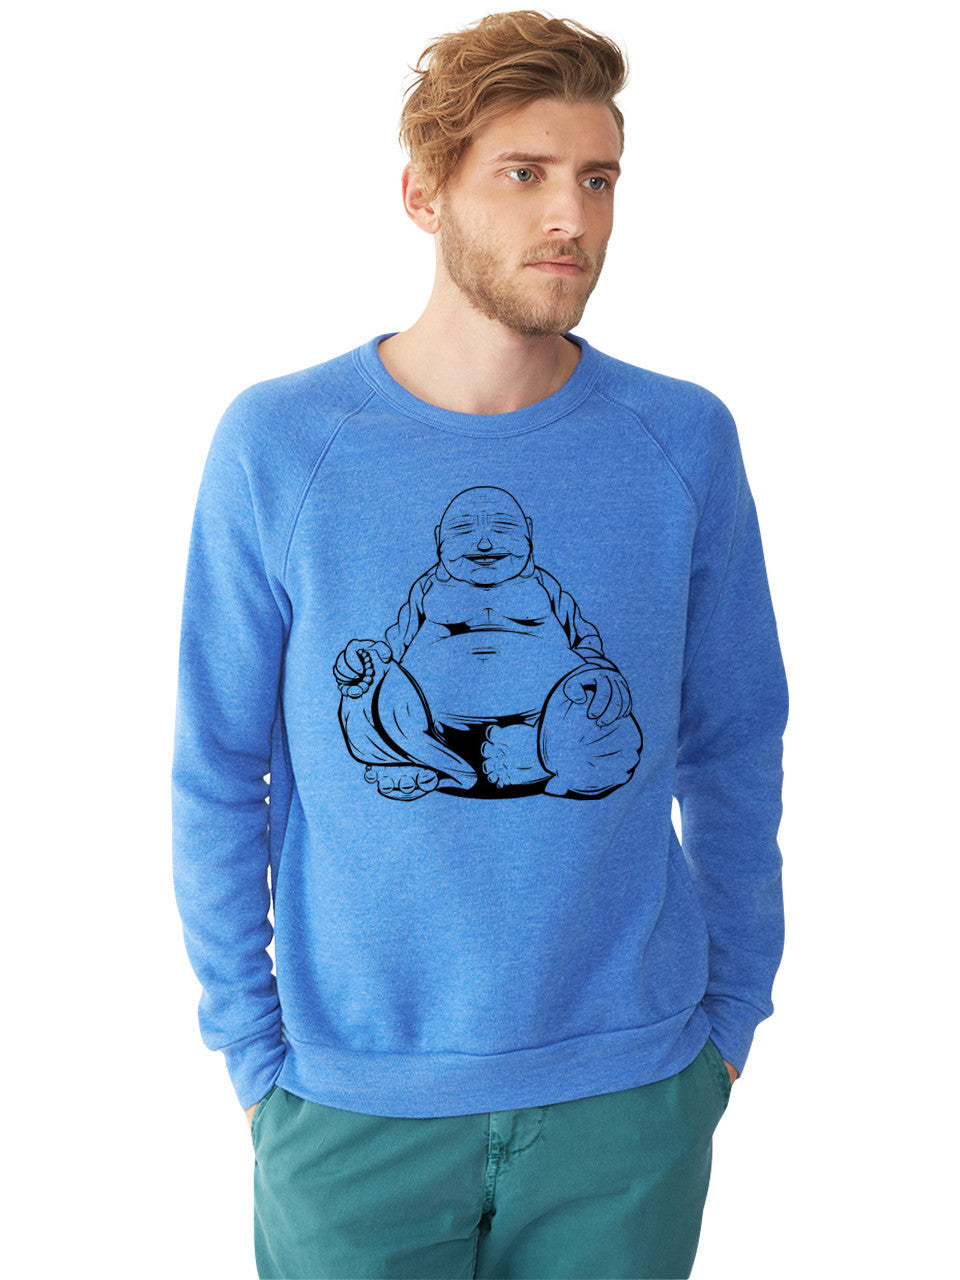 Eclectic Taste Buddha Sweatshirt